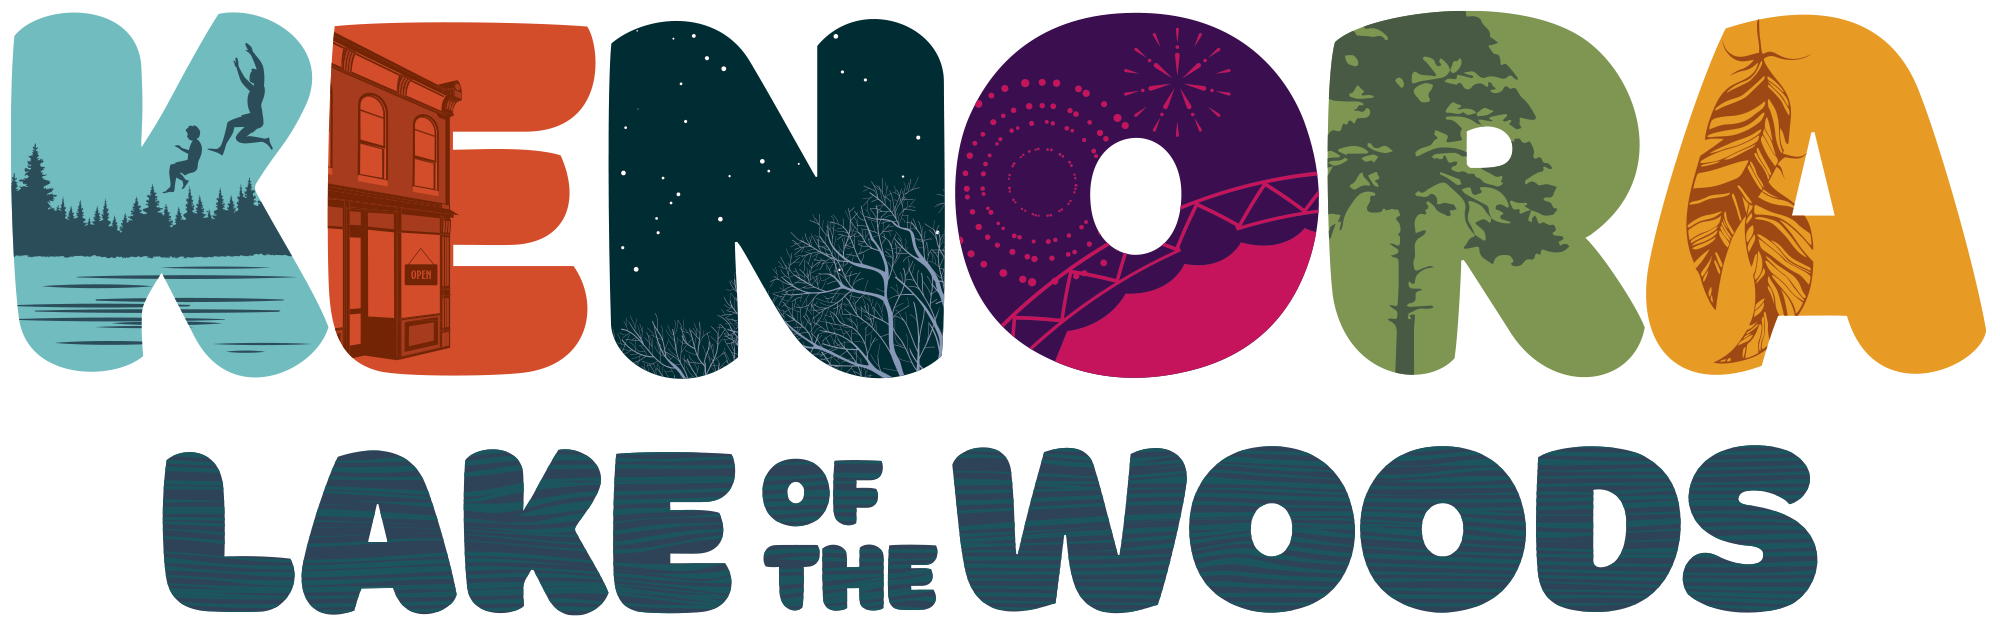 kenora lake of the woods logo